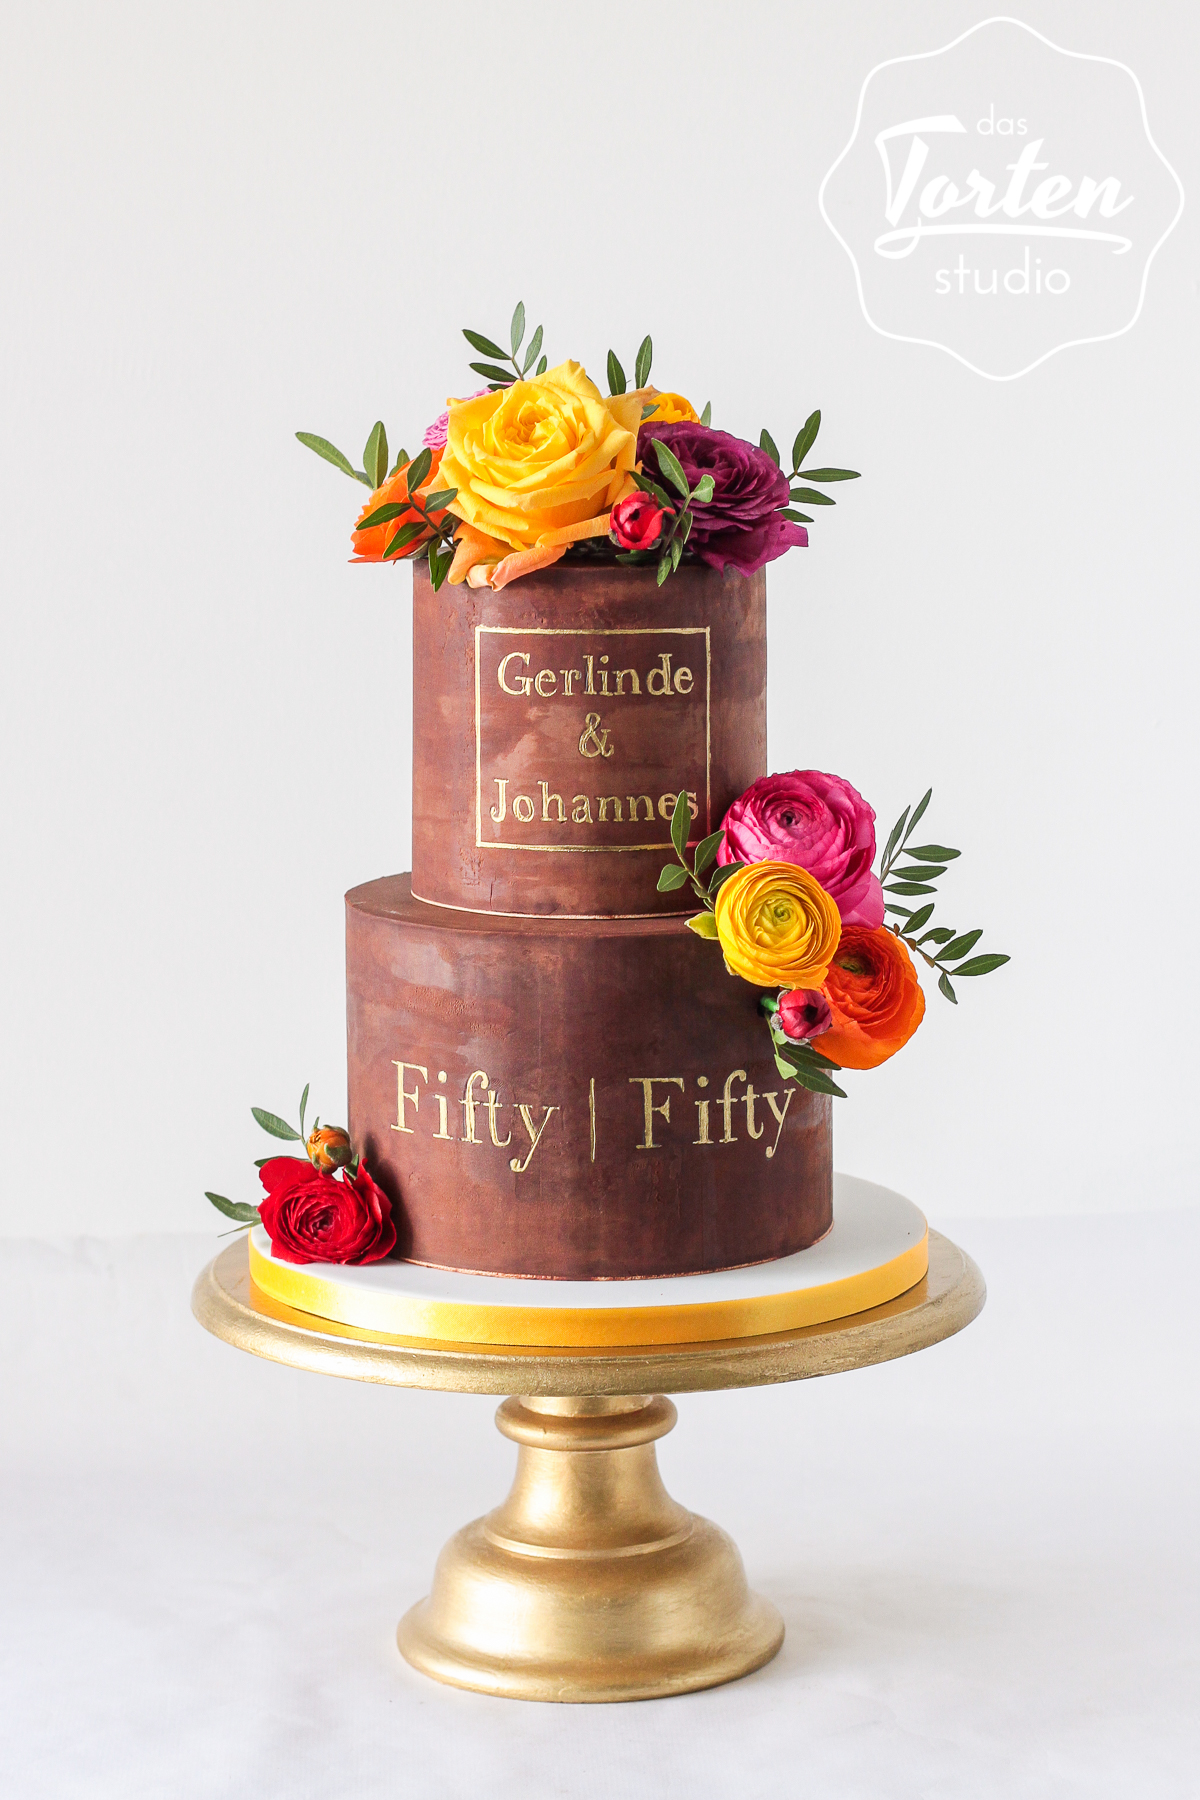 zweistöckige Geburtstagstorte aus Schokolade, dekoriert mit bunten Rosen und Ranunkel, Aufschrift in Gold